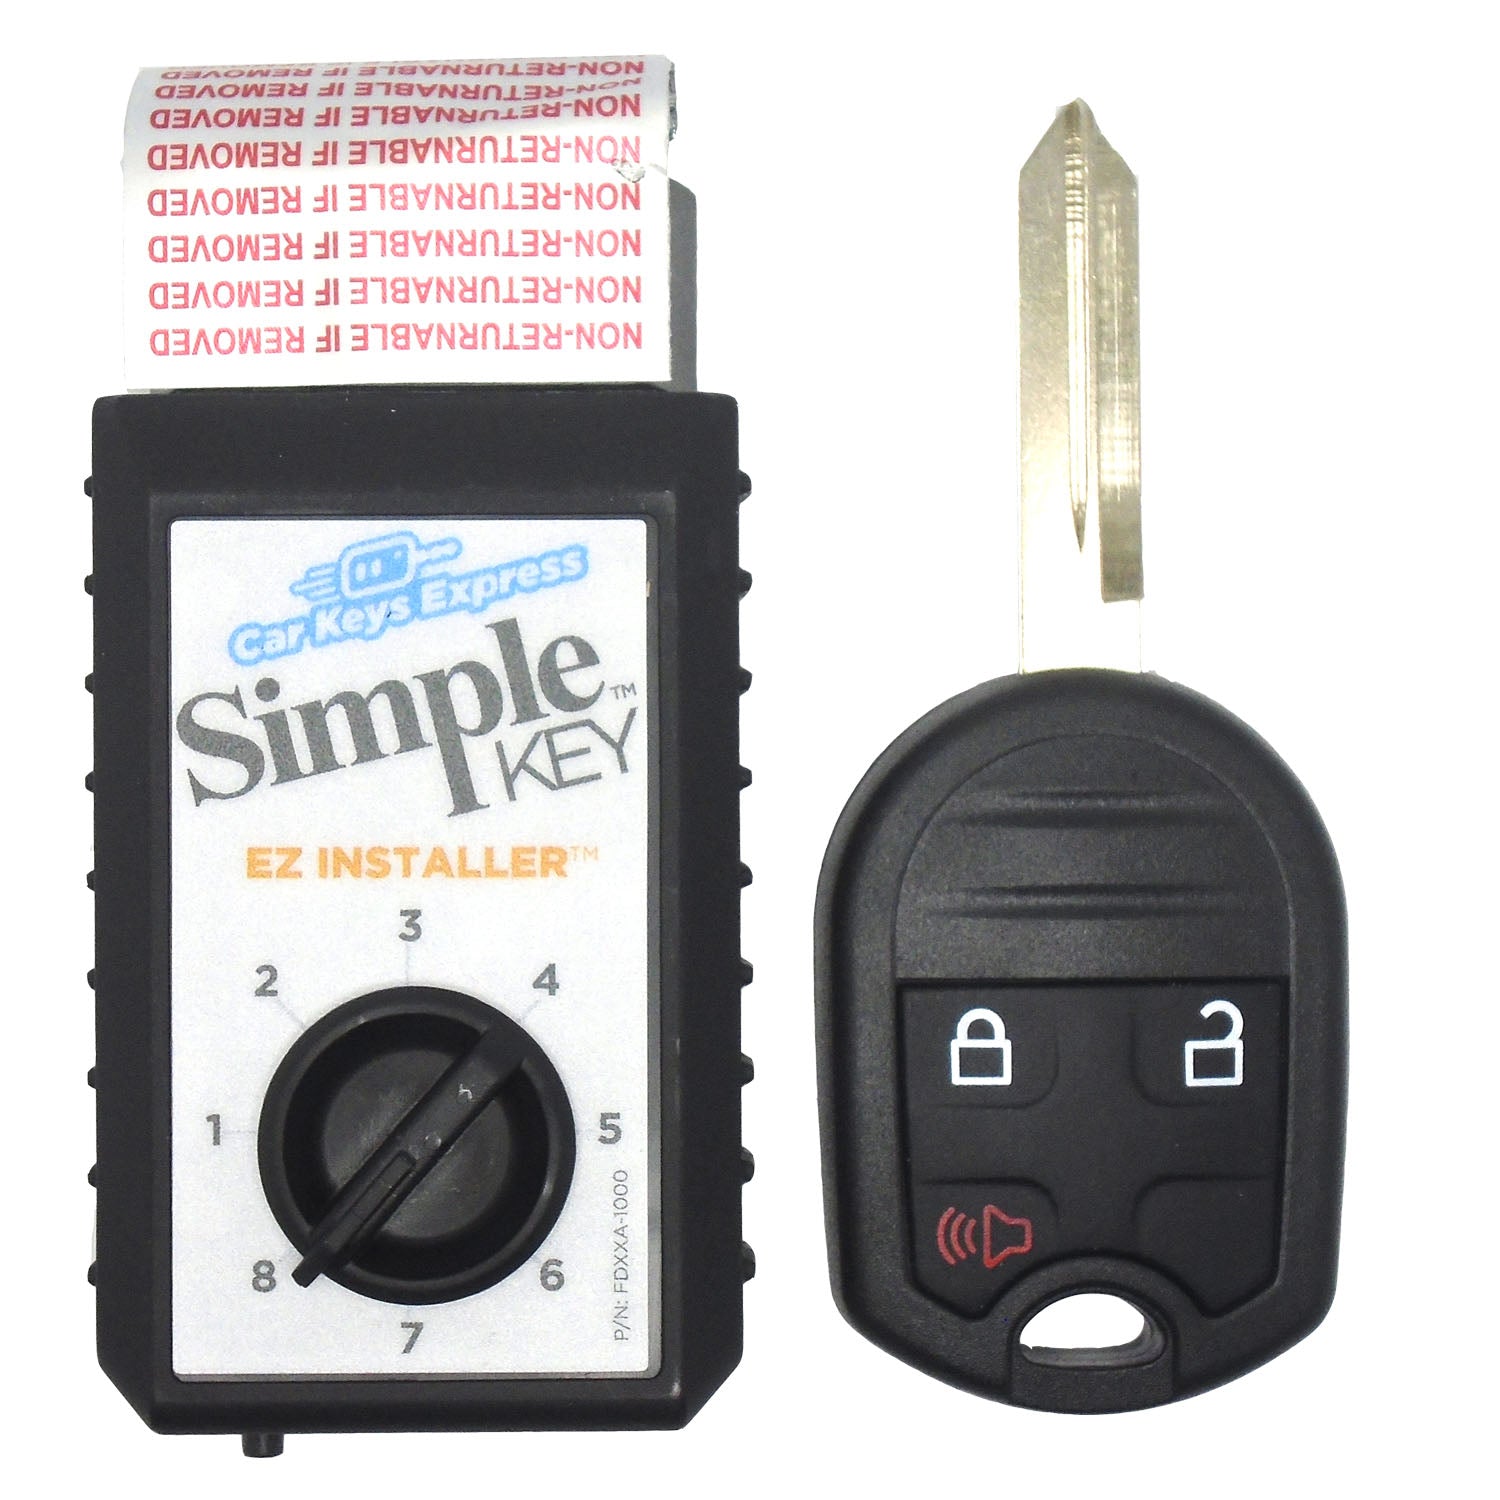 Tom's Key - Paquete de llave de coche y programador con llave abatible de 3  botones, diseñada para vehículos Ford seleccionados (clave de programa tú